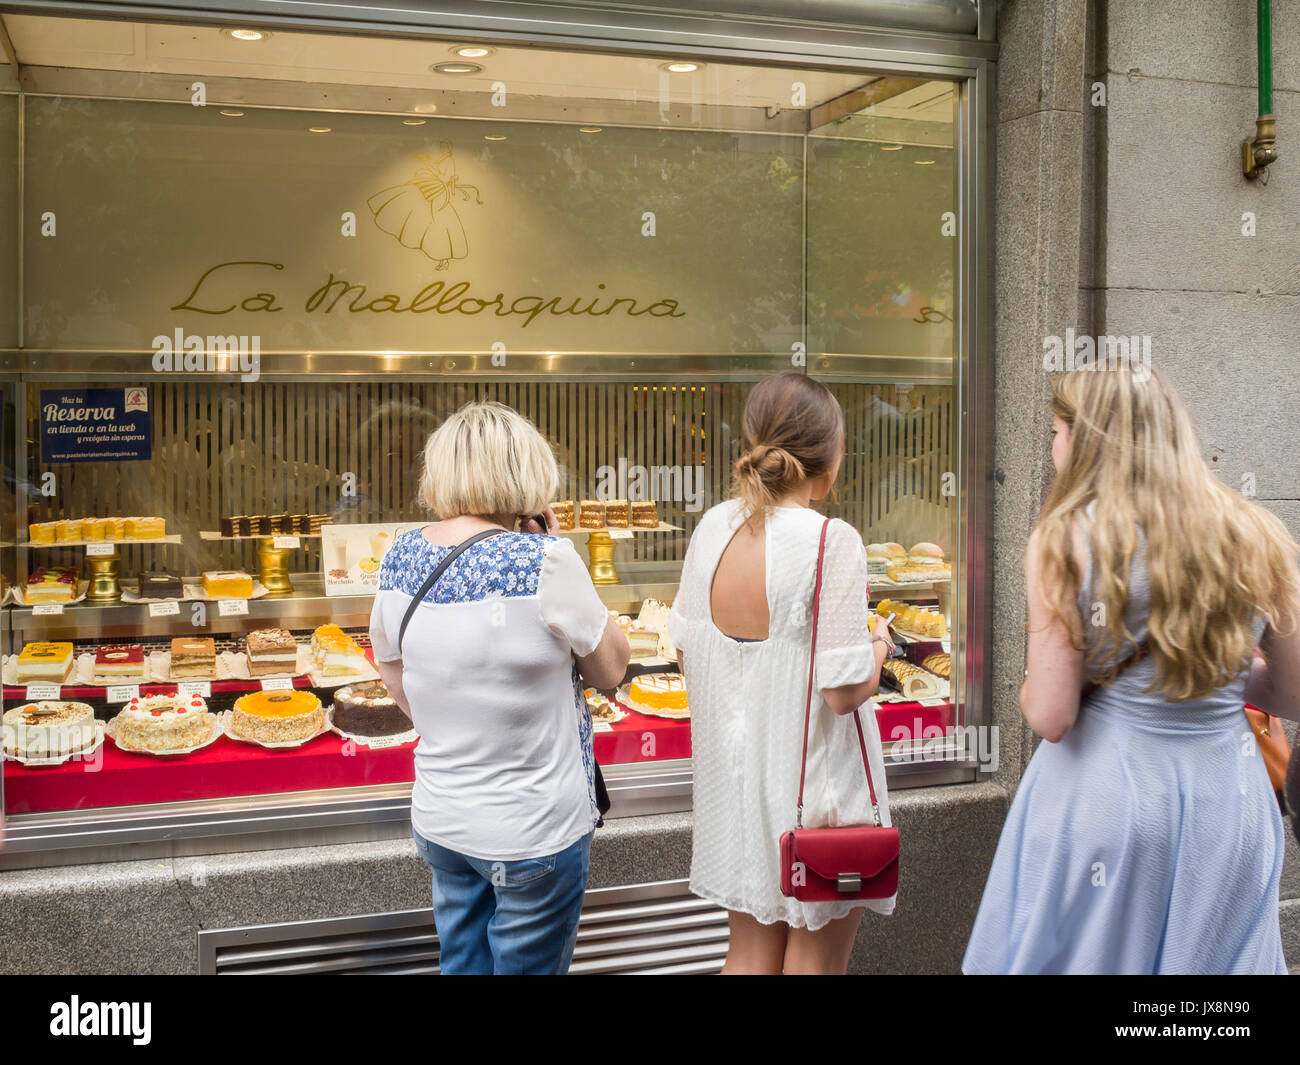 Tartas de la pastelería la mallorquina. La Puerta del Sol. Madrid. España Banque D'Images